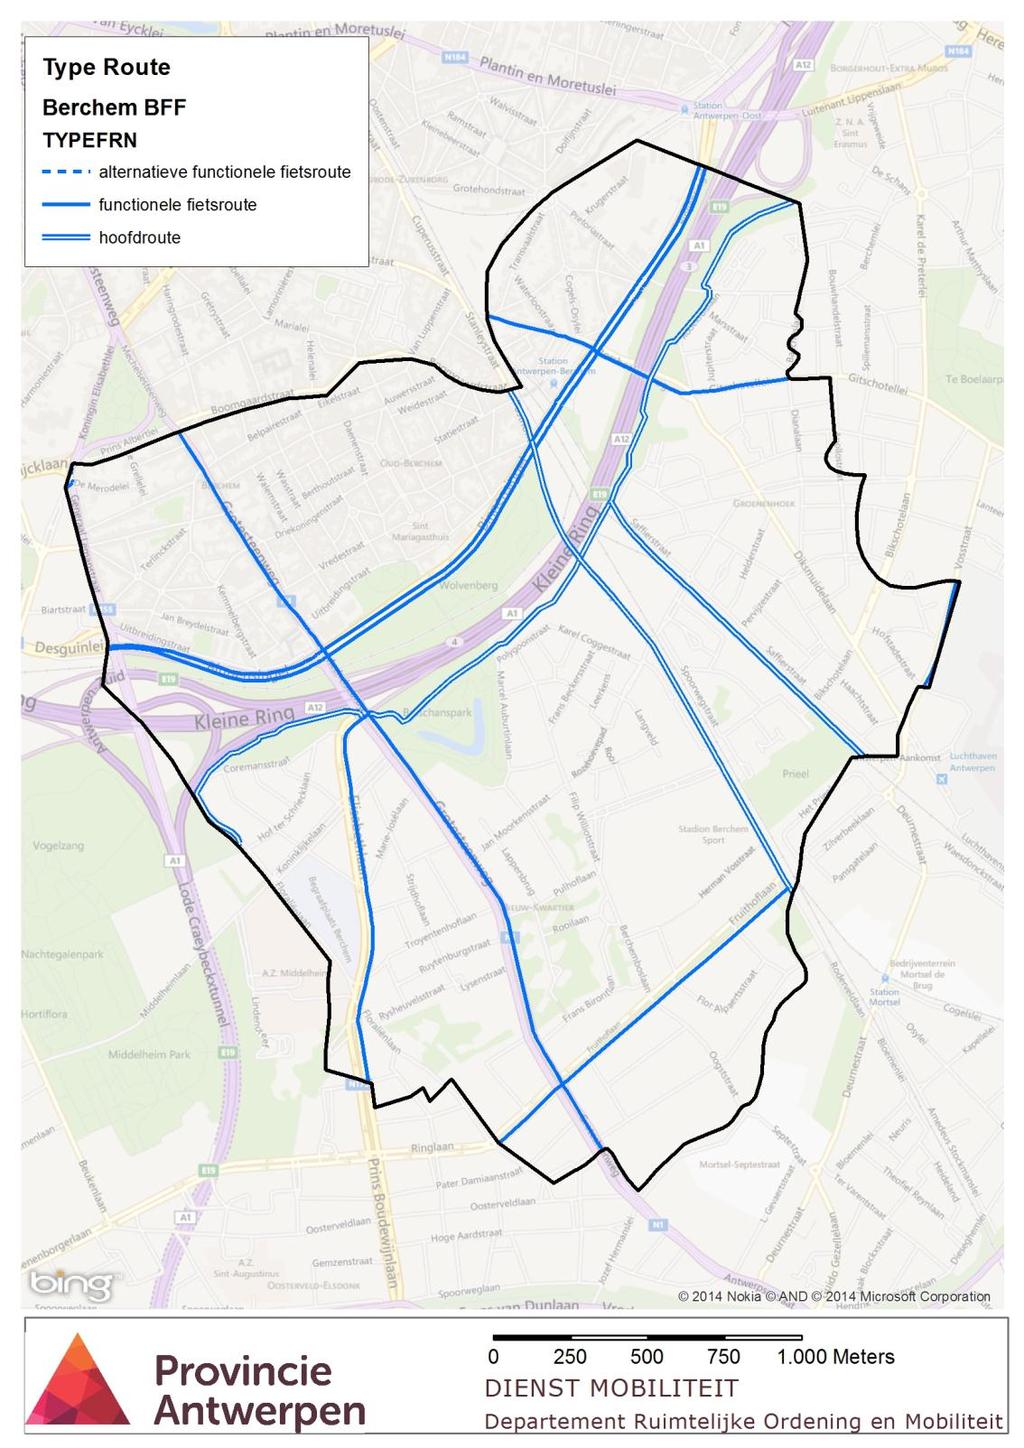 Wanneer het BFF wordt bekeken vanuit de categorisering van BFF type dan zijn er 12,2km functionele routes, en 6,3 hoofdroutes. In het geval van Berchem is o.a. de fietsostrade Antwerpen Mechelen zo n hoofdroute, maar ook het Ringfietspad.